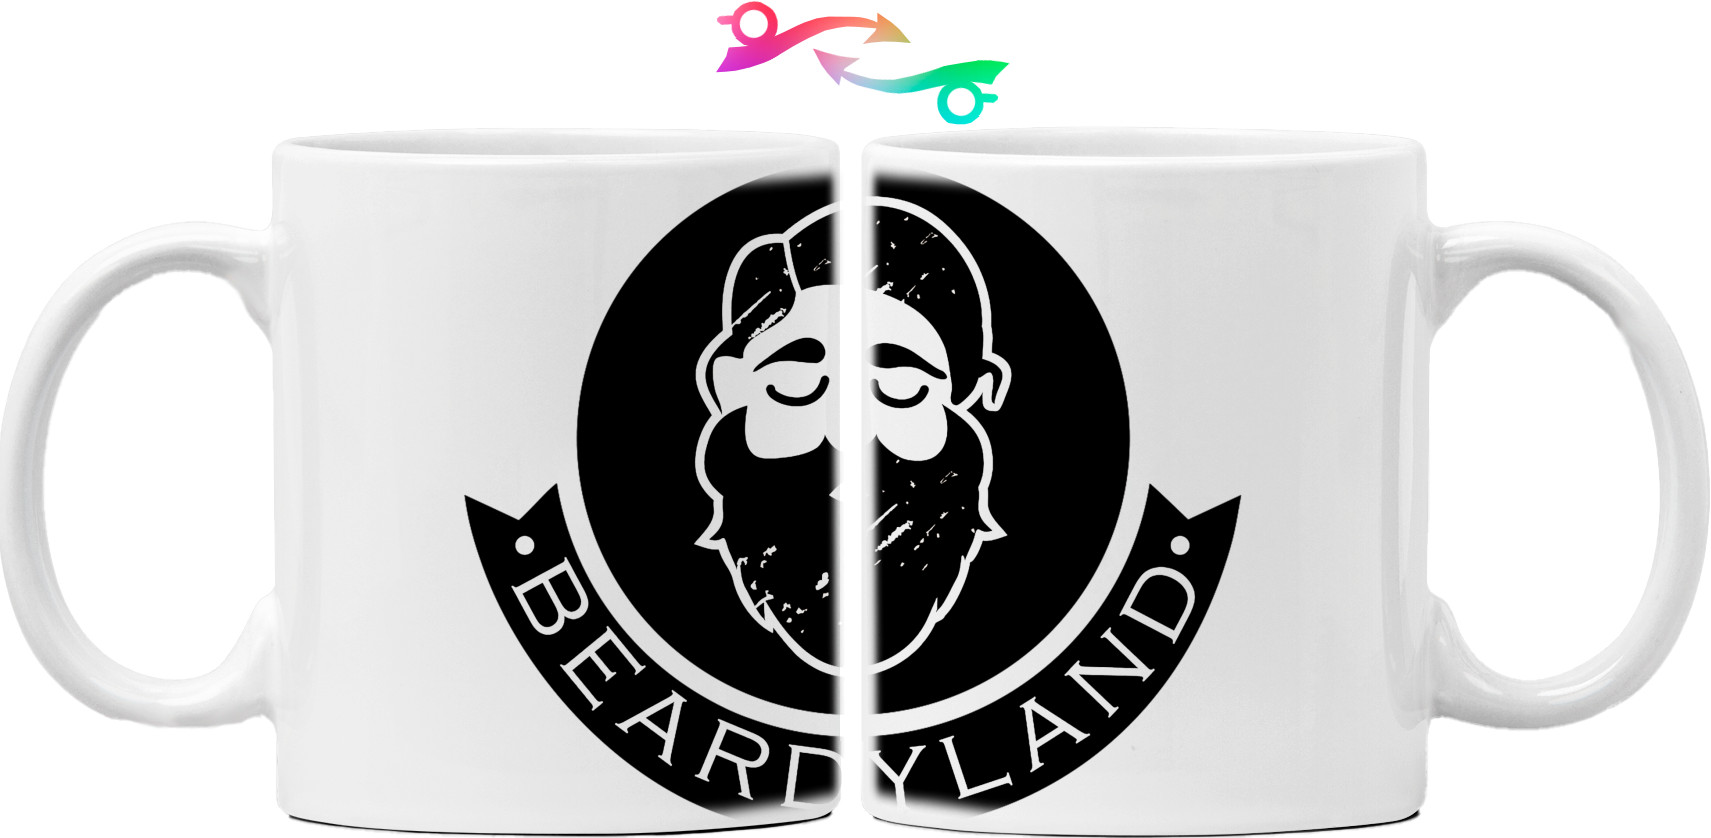 Beardyland